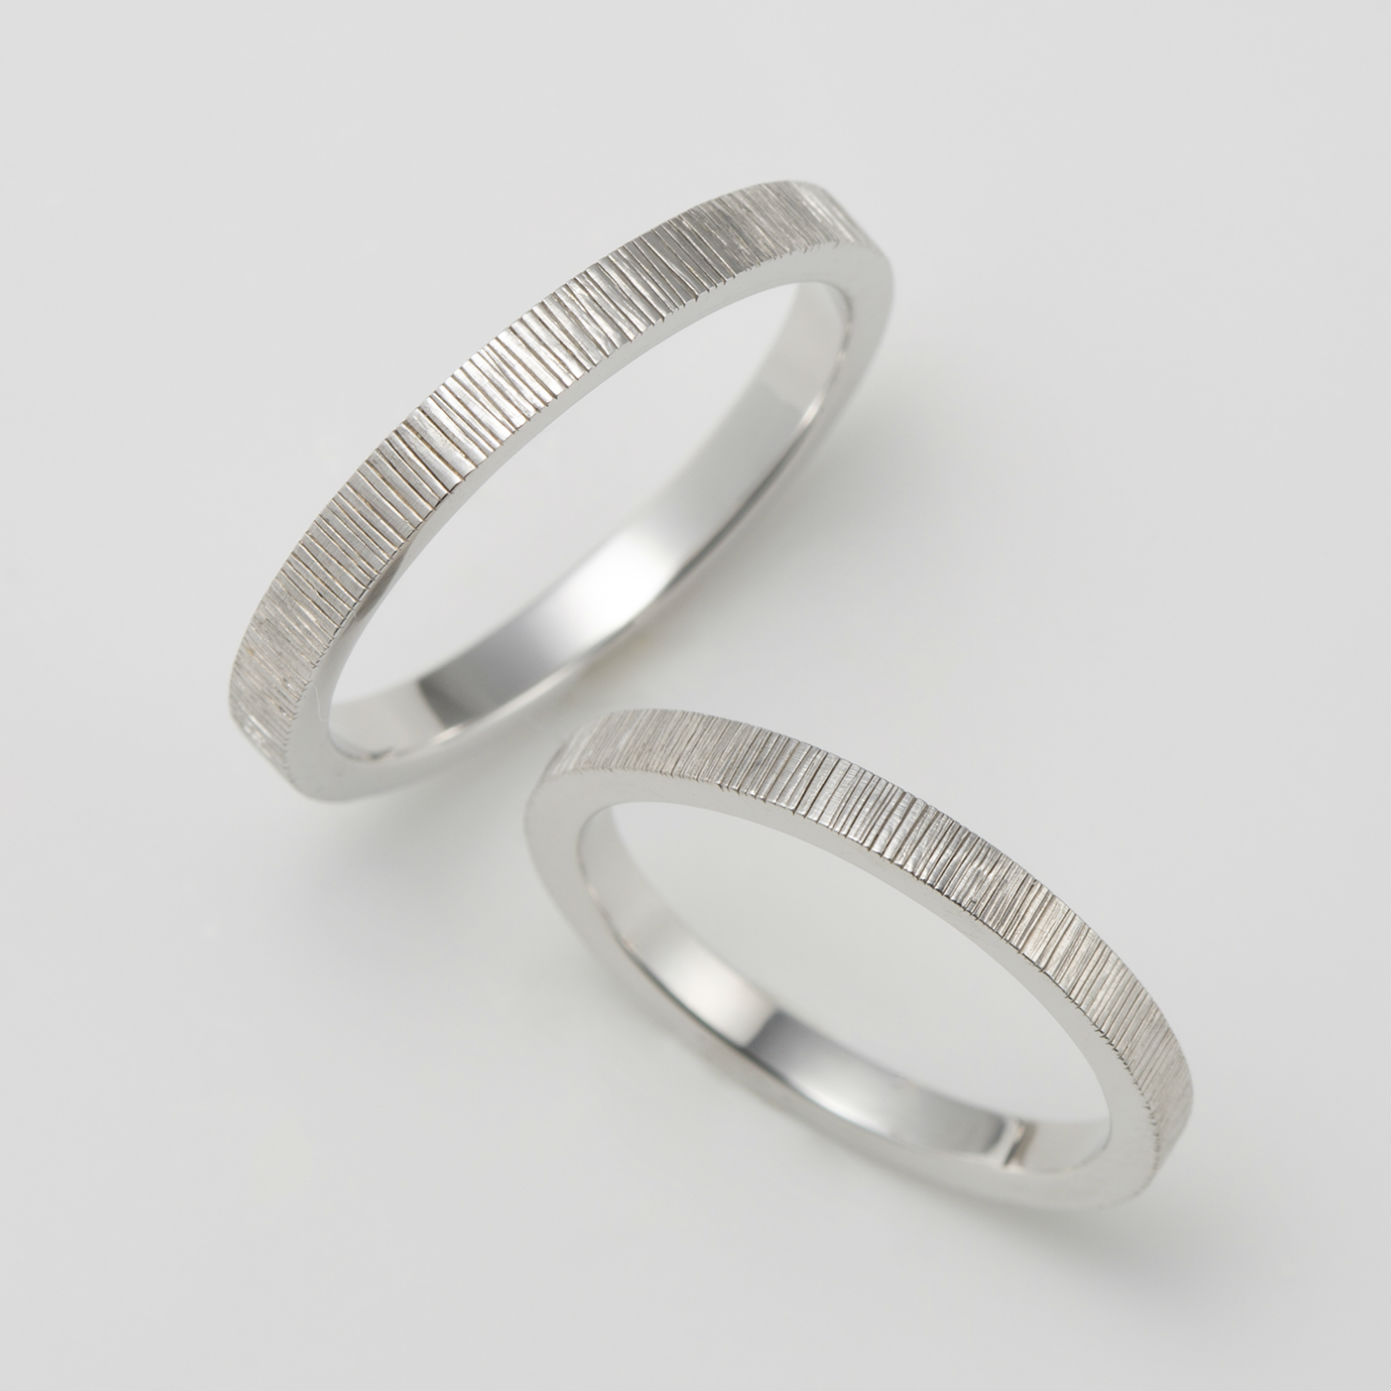 タガネ彫りを施した国産の結婚指輪ブランド